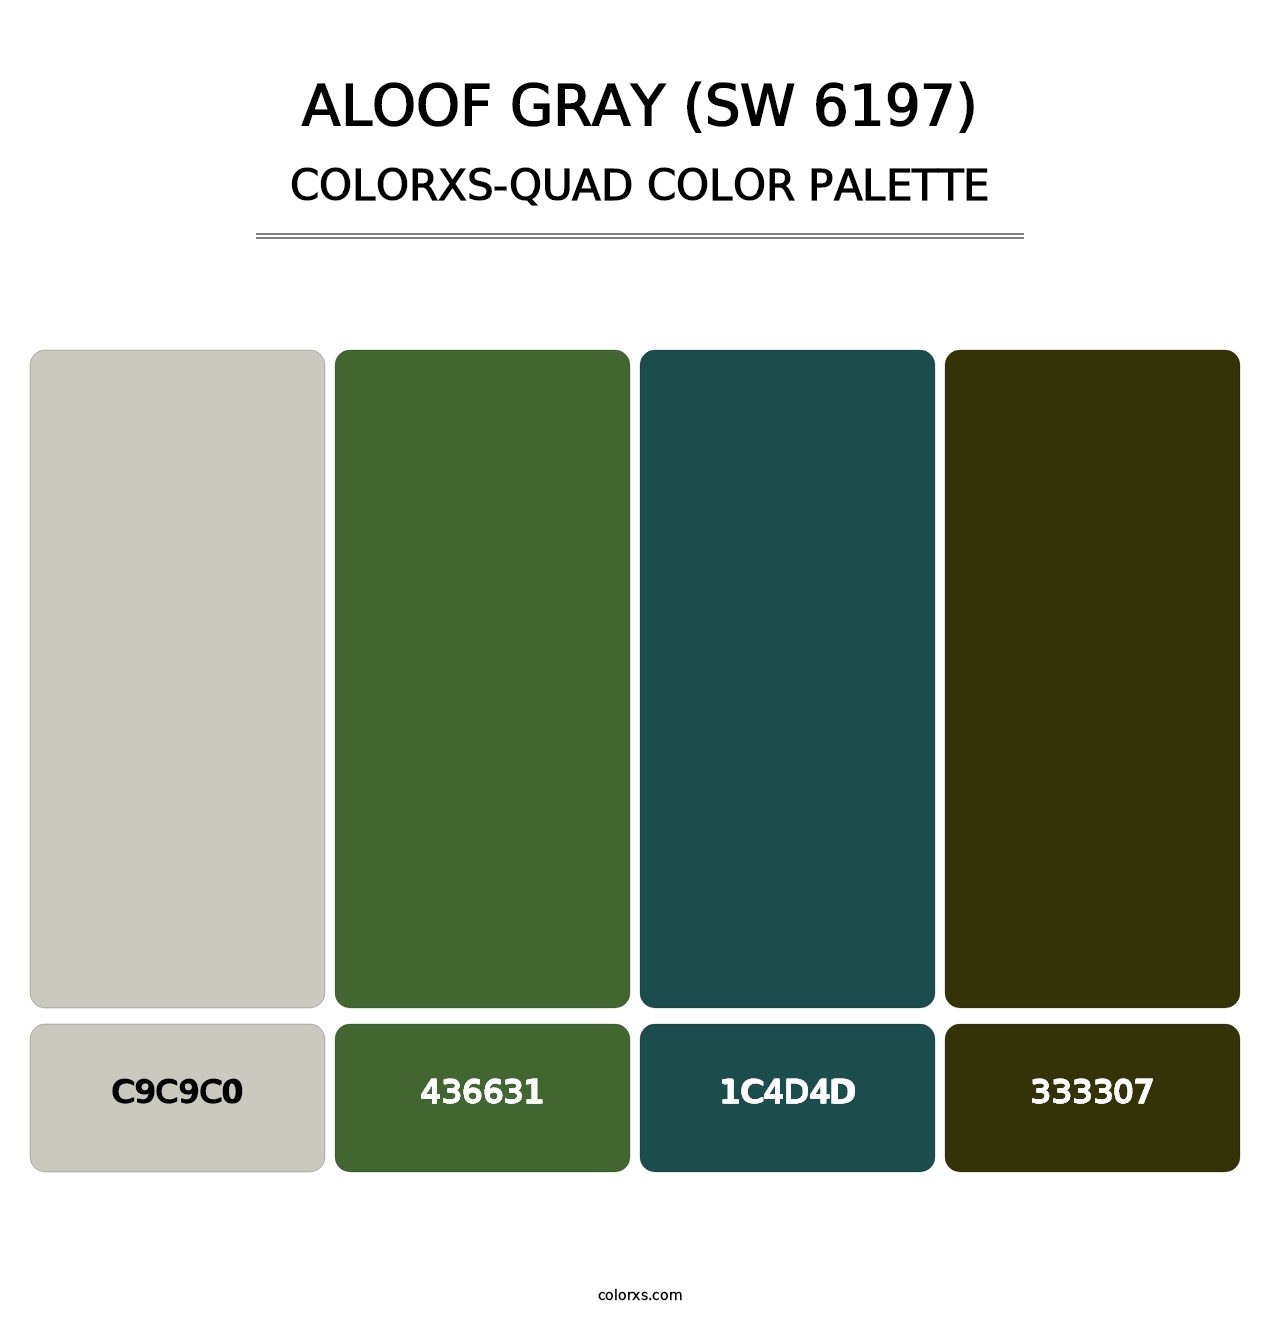 Aloof Gray (SW 6197) - Colorxs Quad Palette